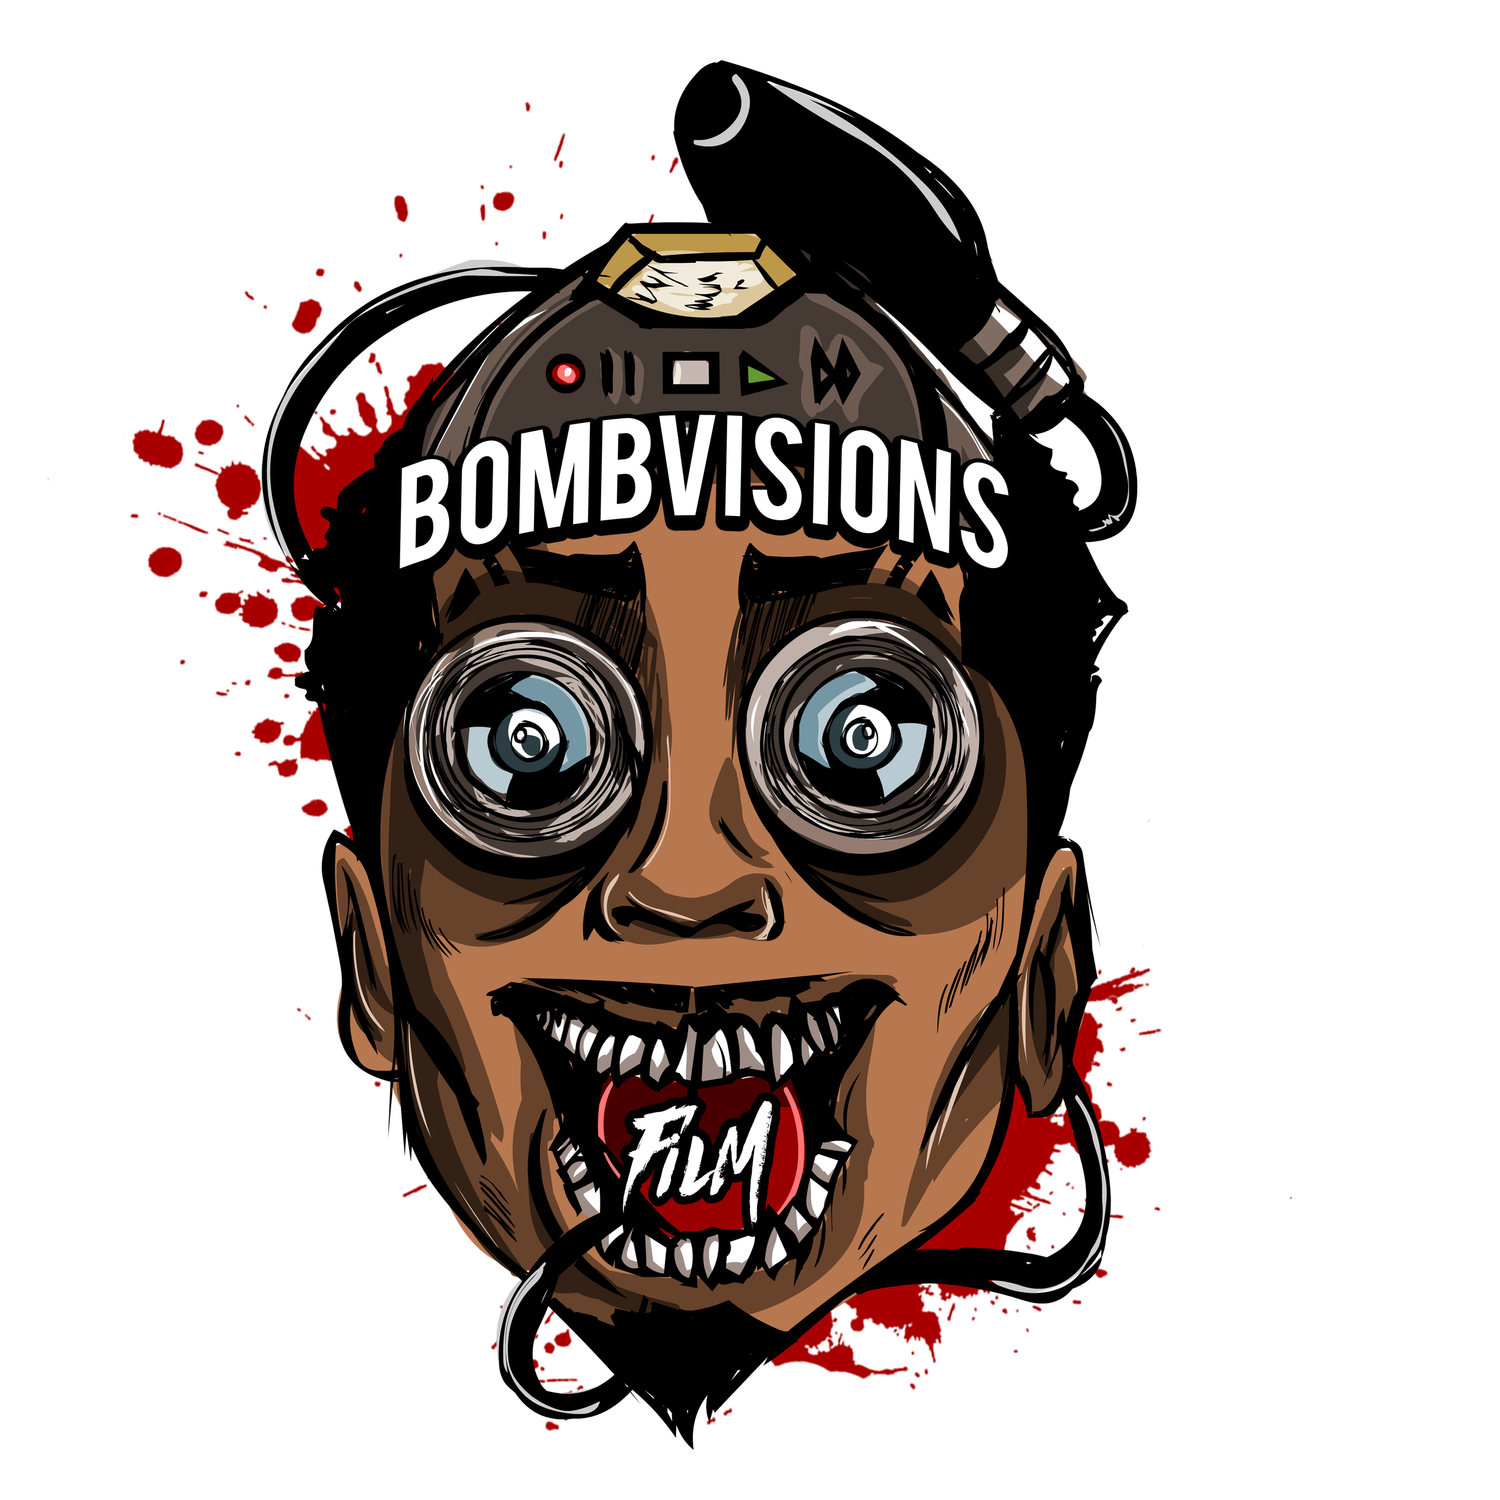 BOMBVISIONSFILM, LLC